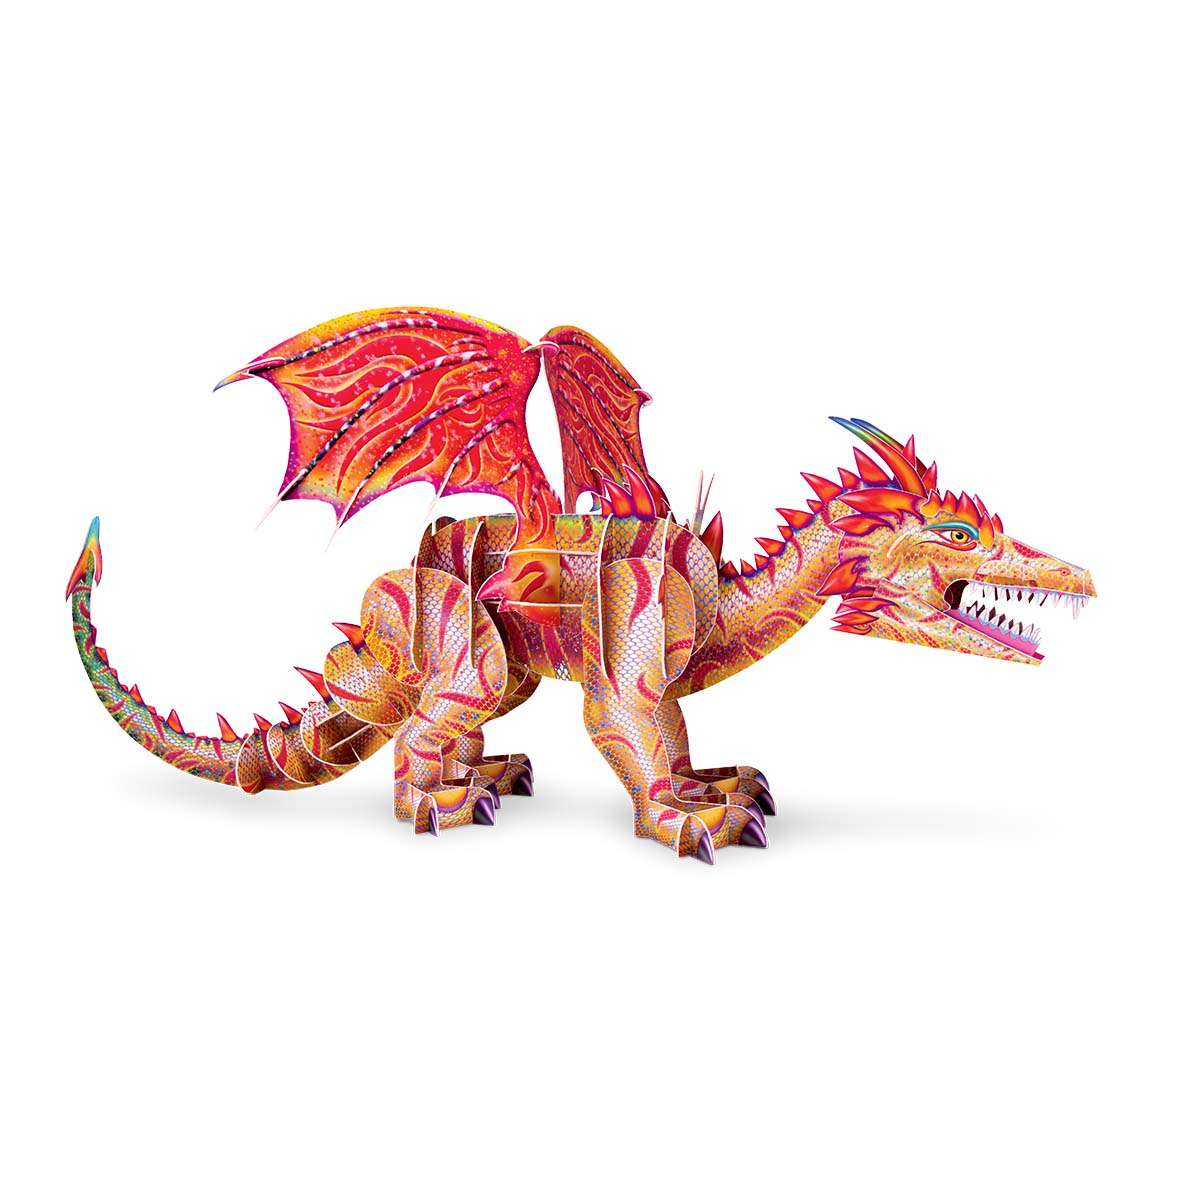 Construis en 3D - Ton dragon géant